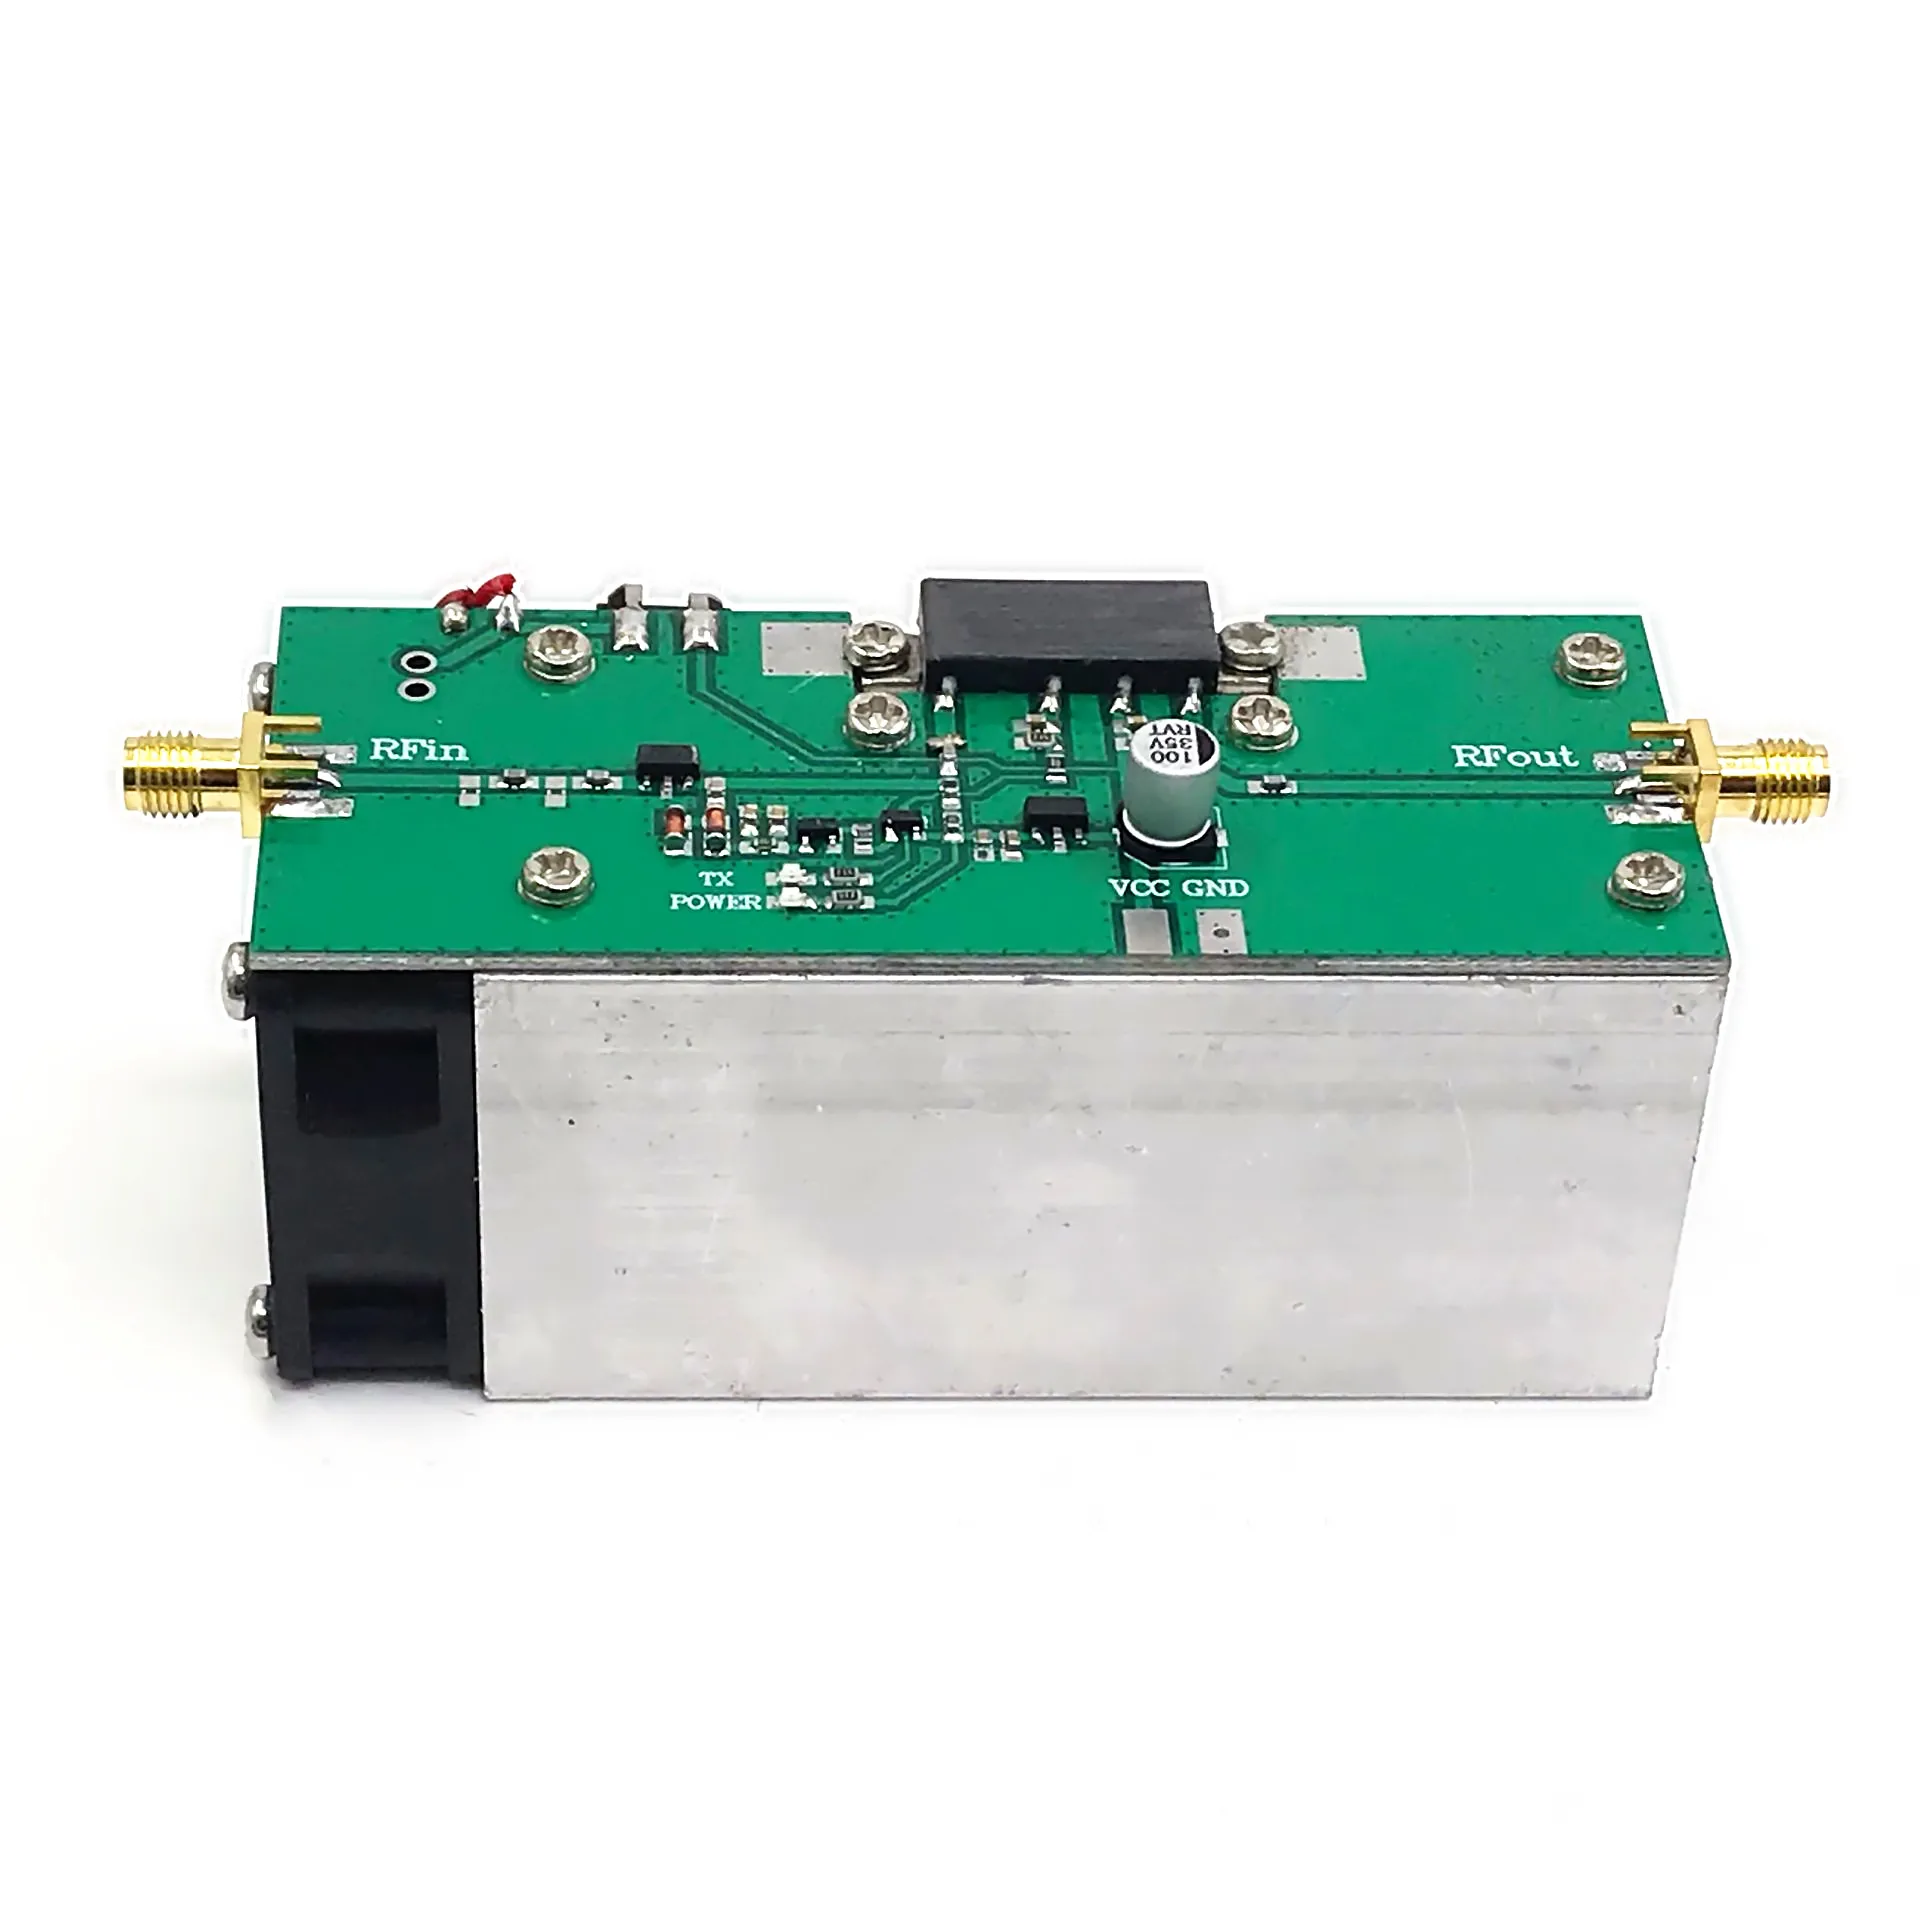 433MHZ RF Power Amplifier 13W 335-480Mhz